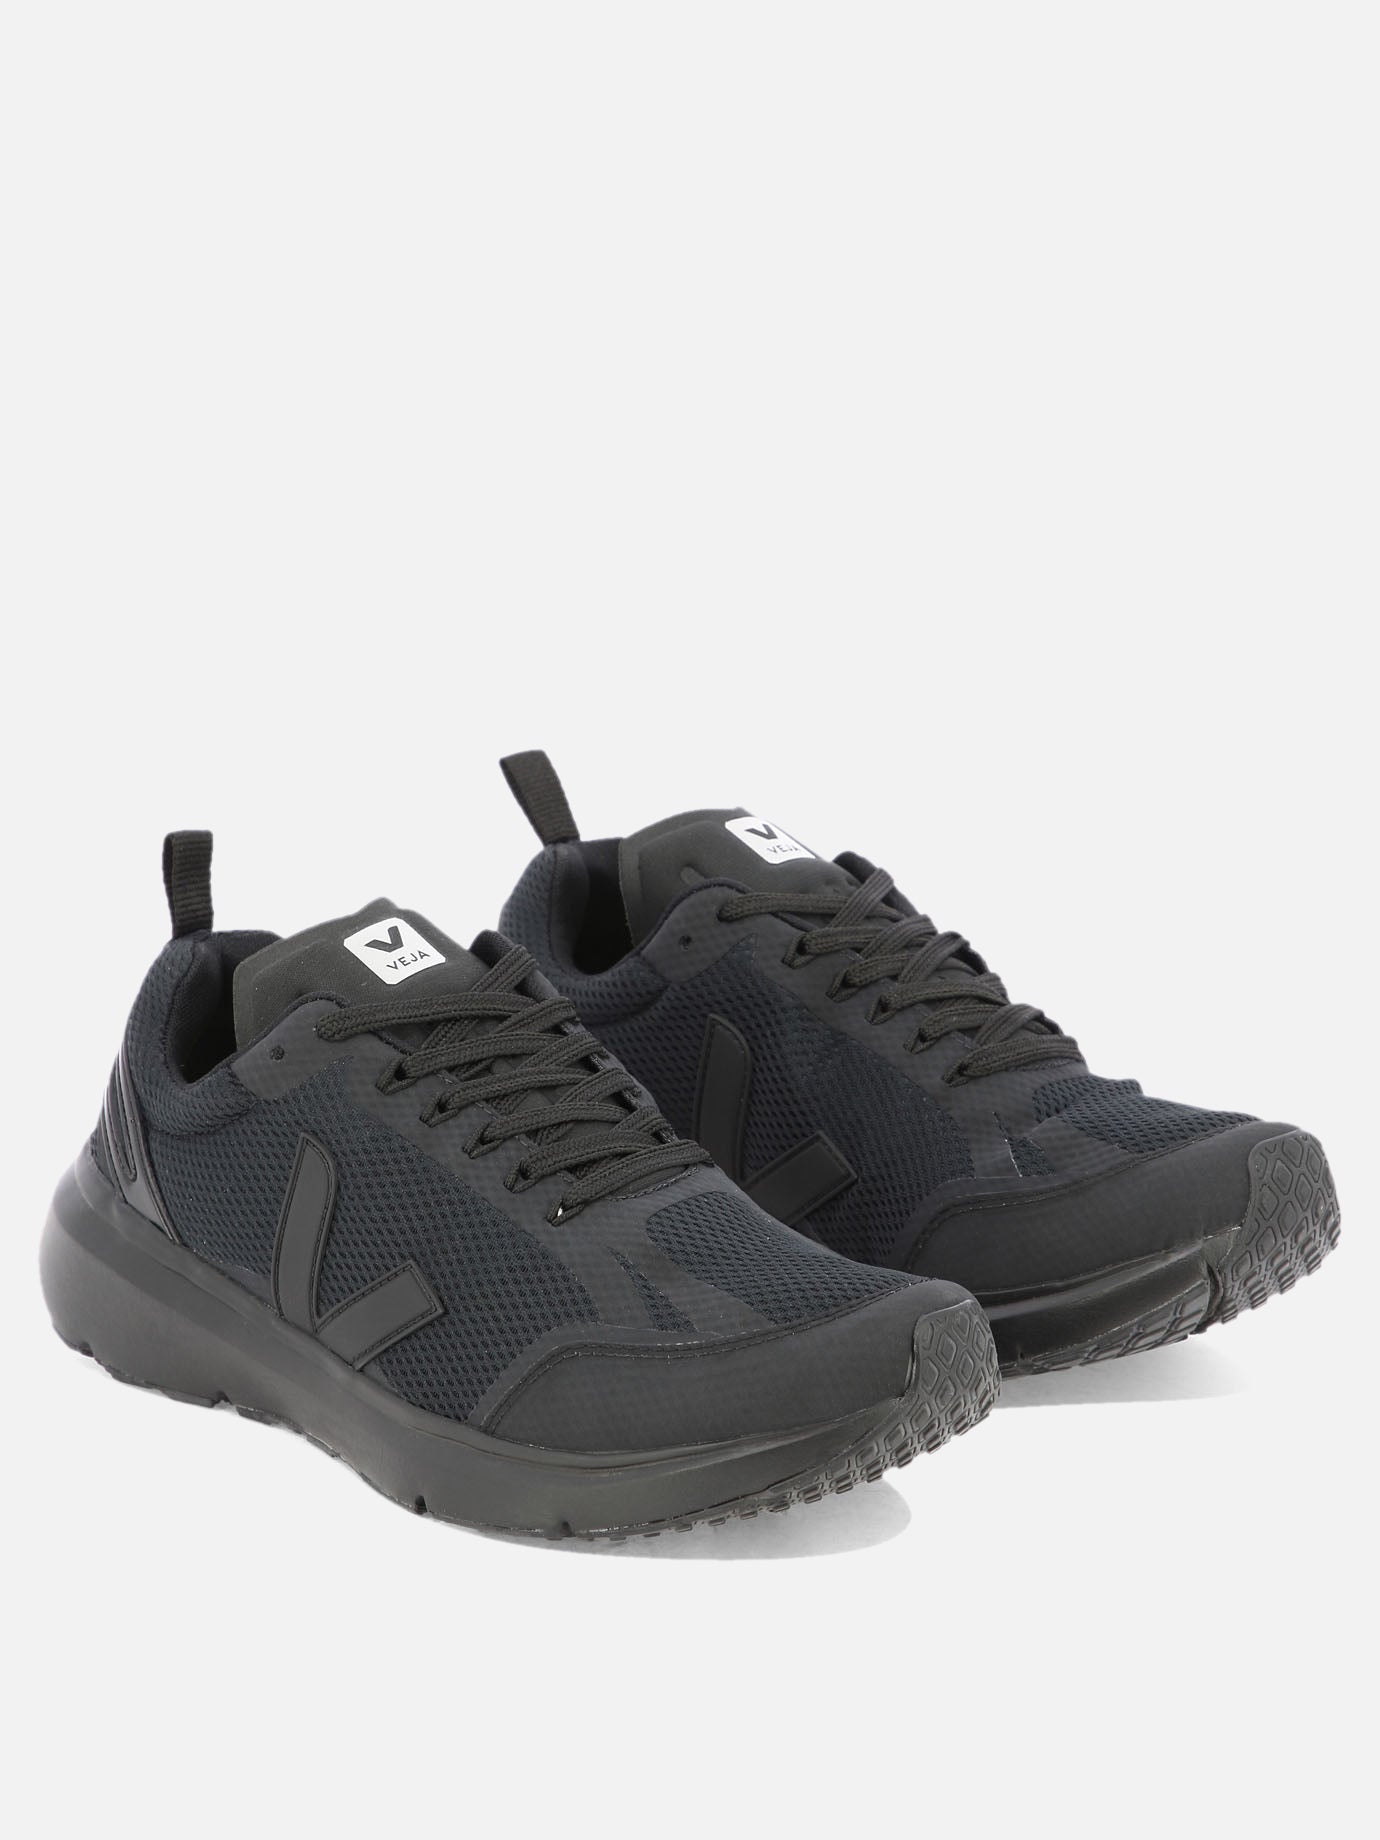 "Condor 2 Alveomesh" sneakers